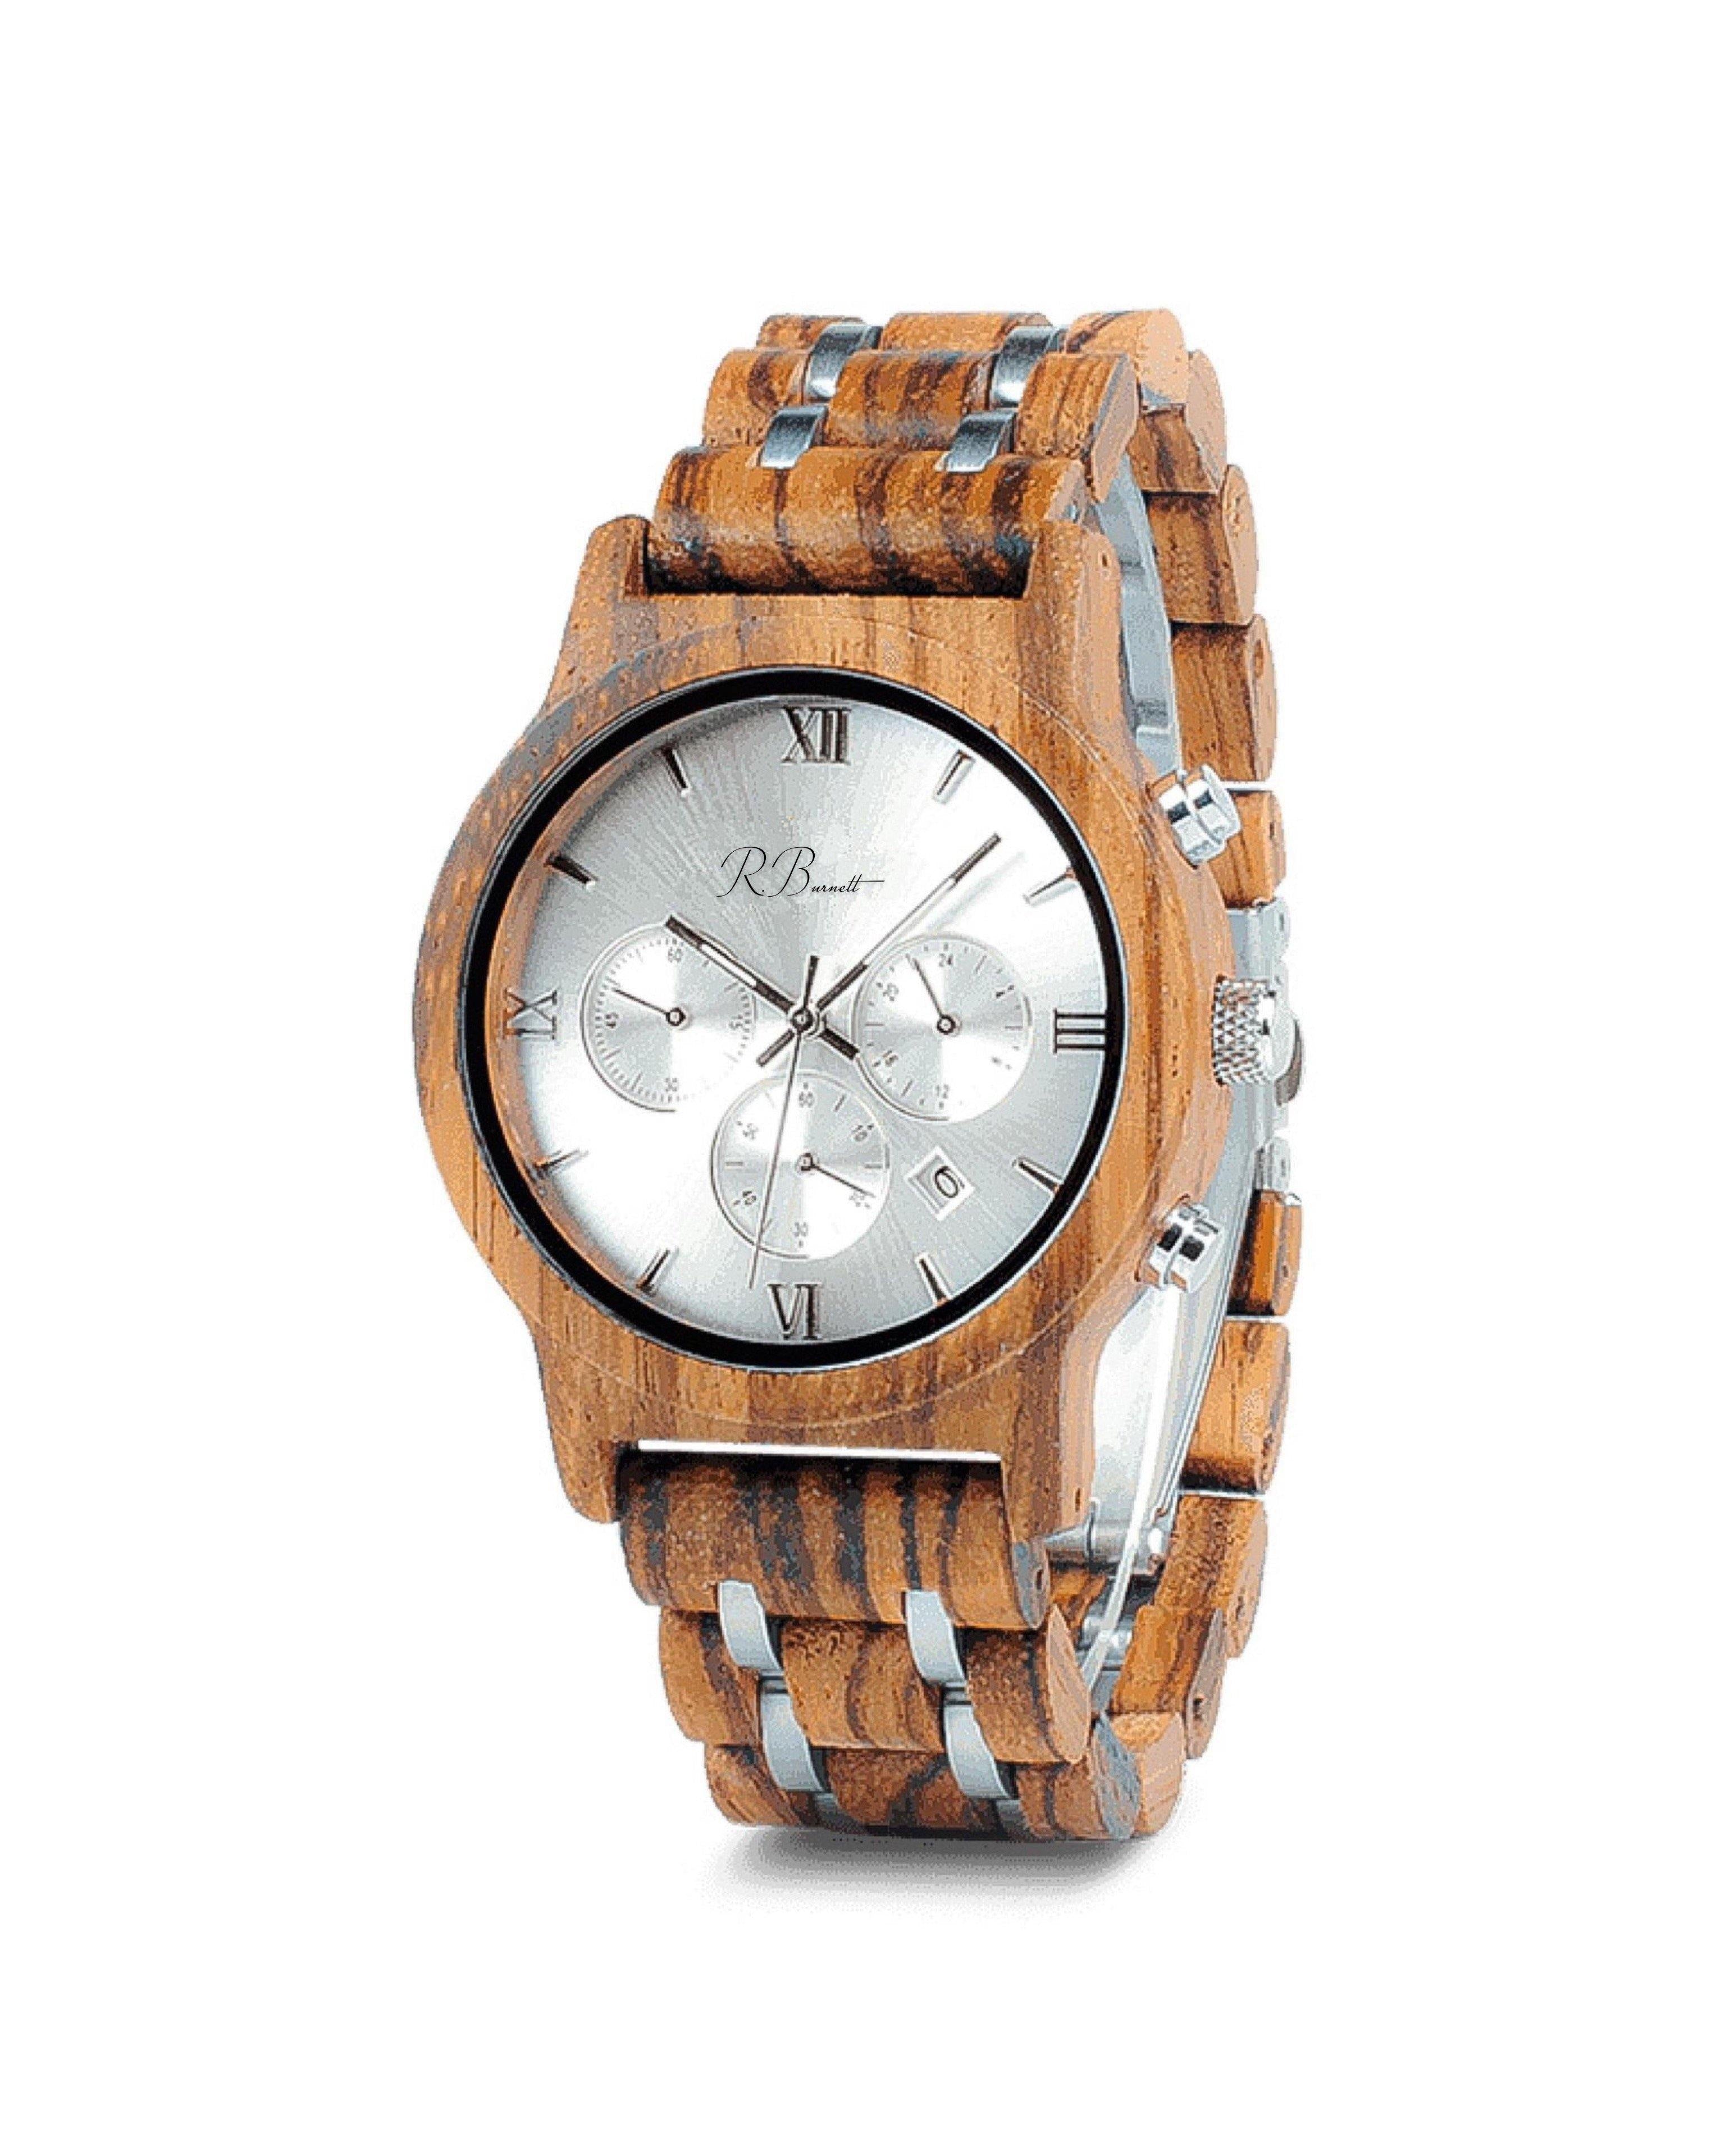 Timber - Wooden Watch - R. Burnett Brand